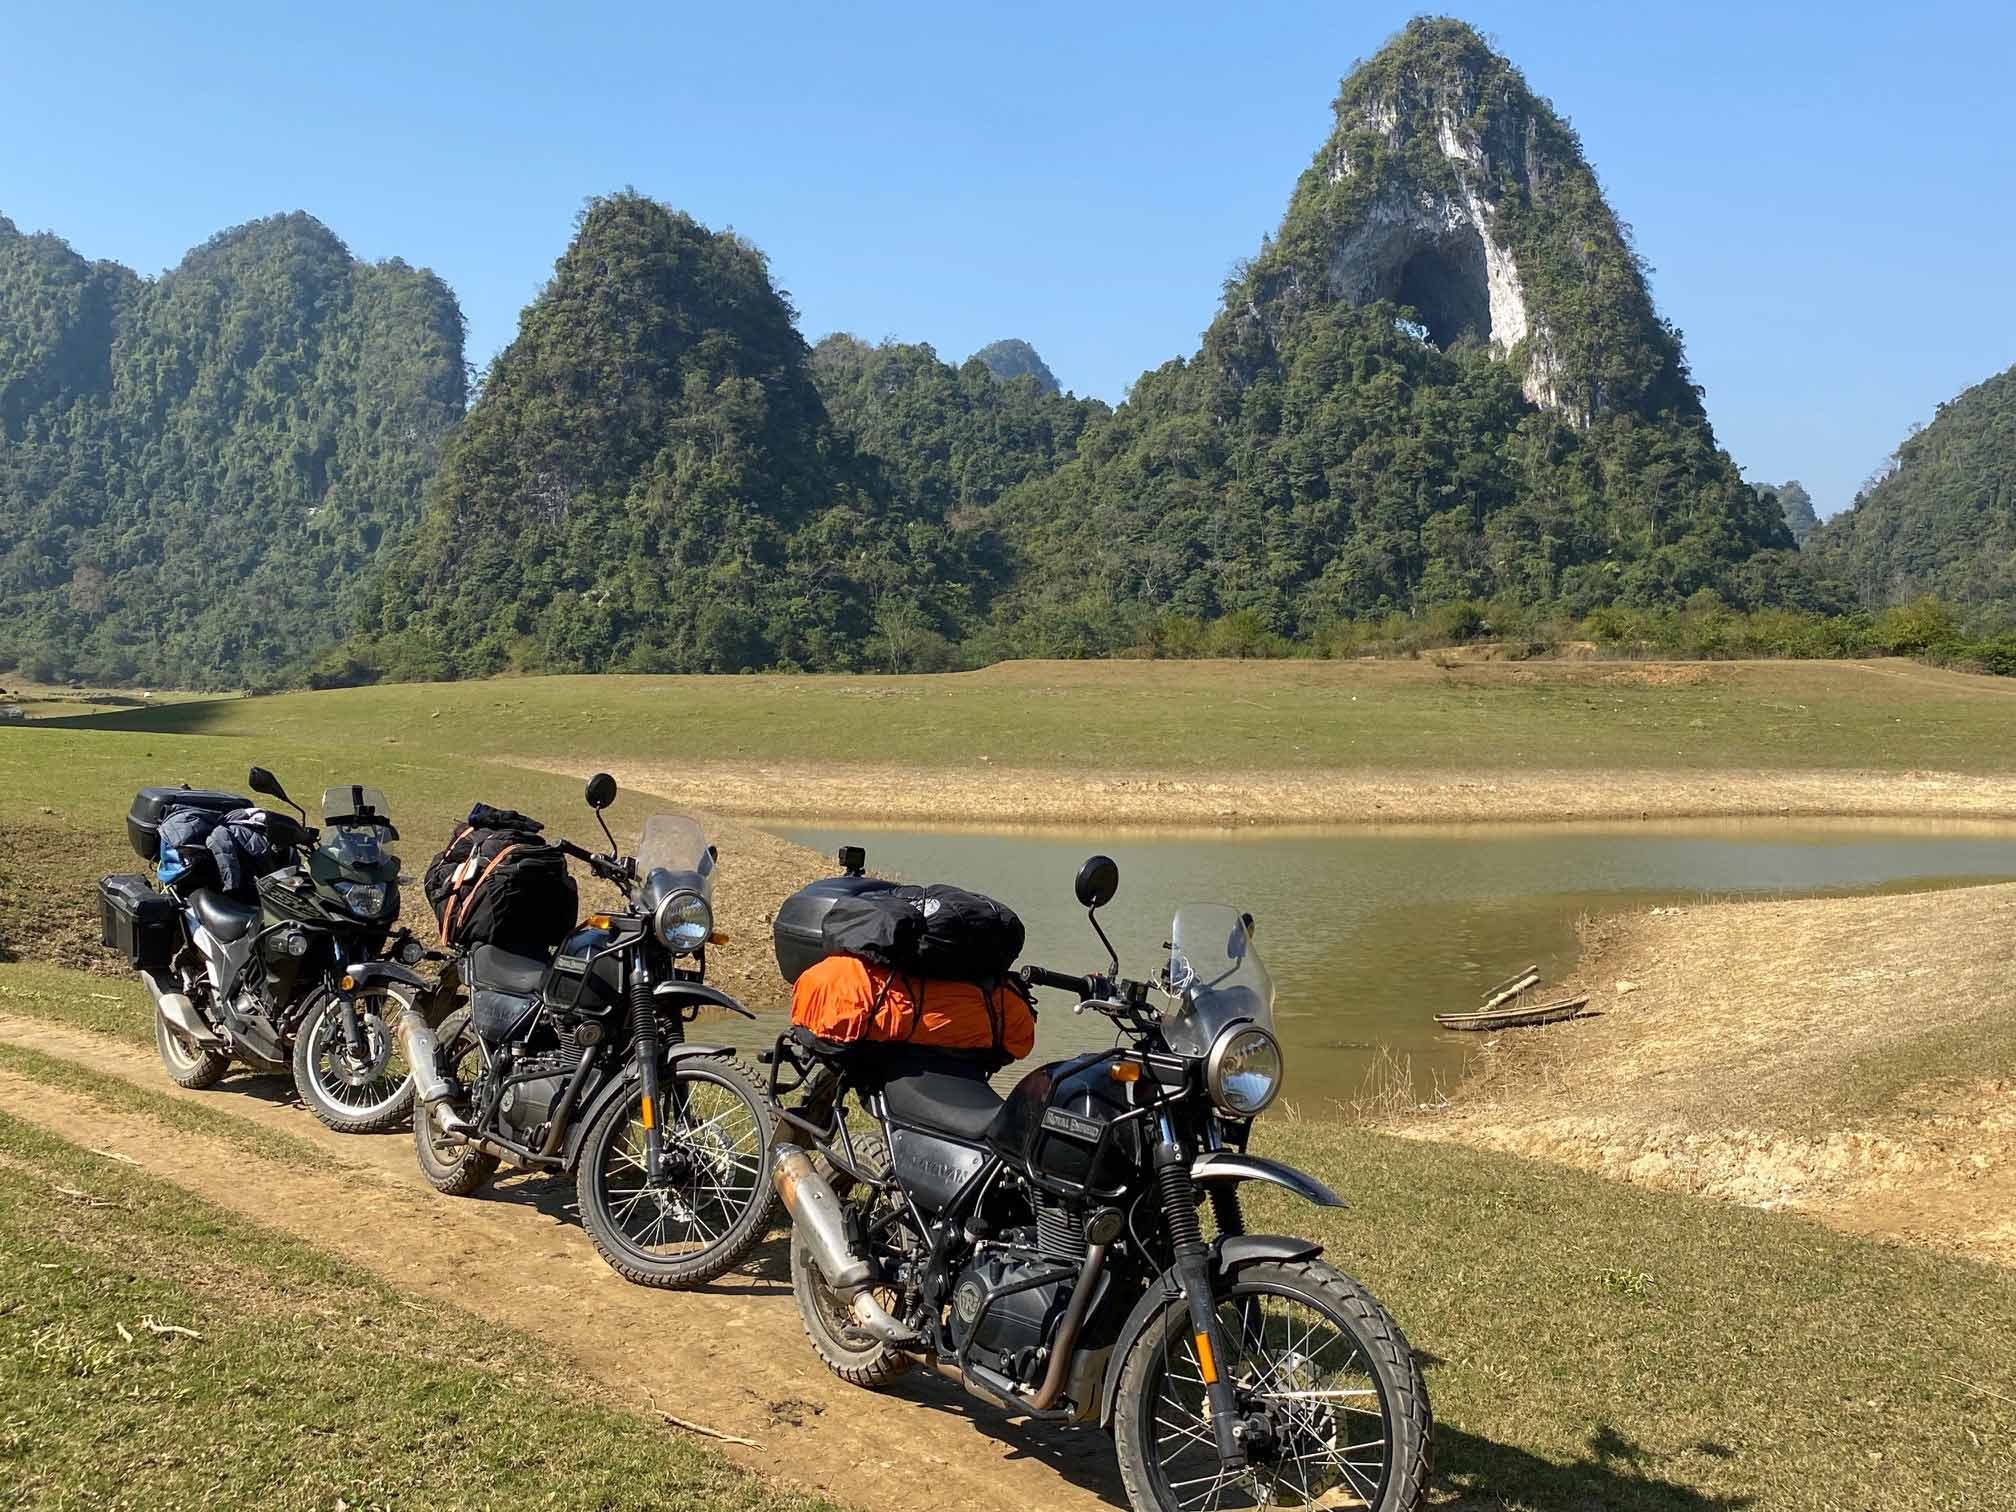 Fahrt mit dem Motorrad durch grüne Wälder in Thailand